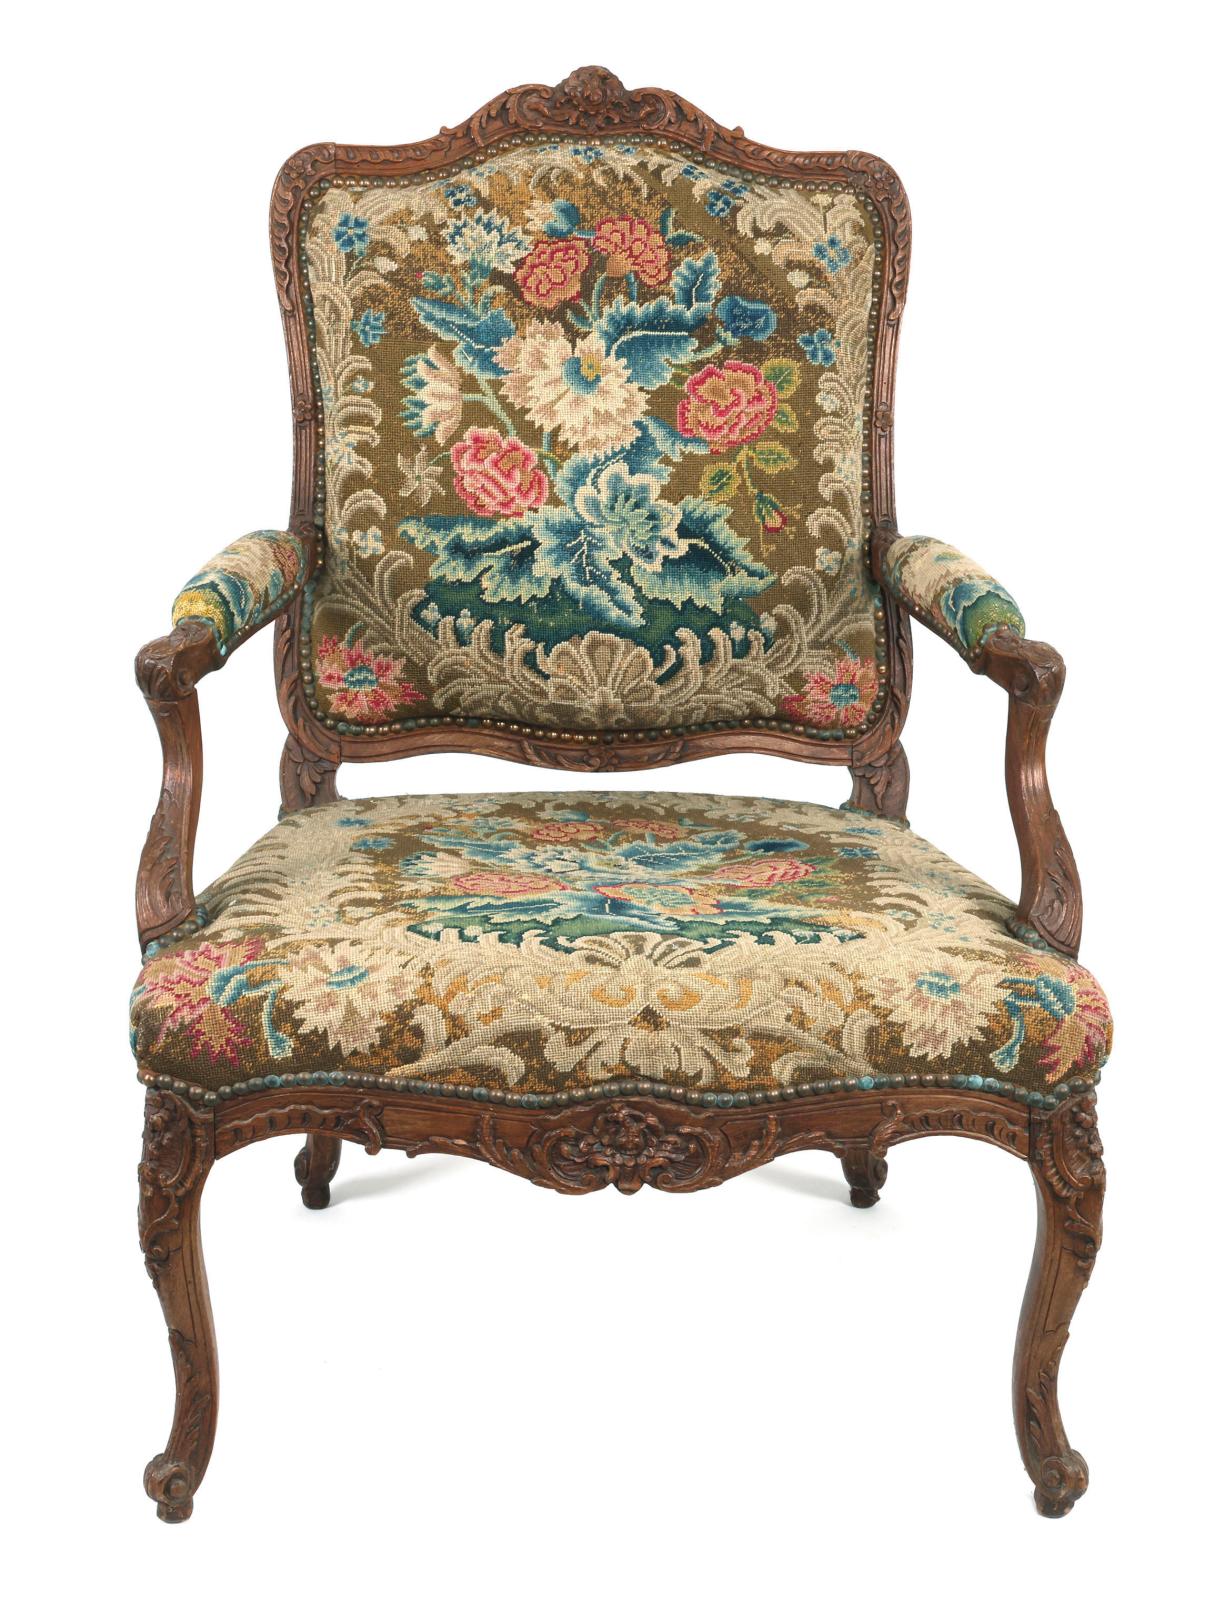 Élégantissimes fauteuils Louis XV à la reine